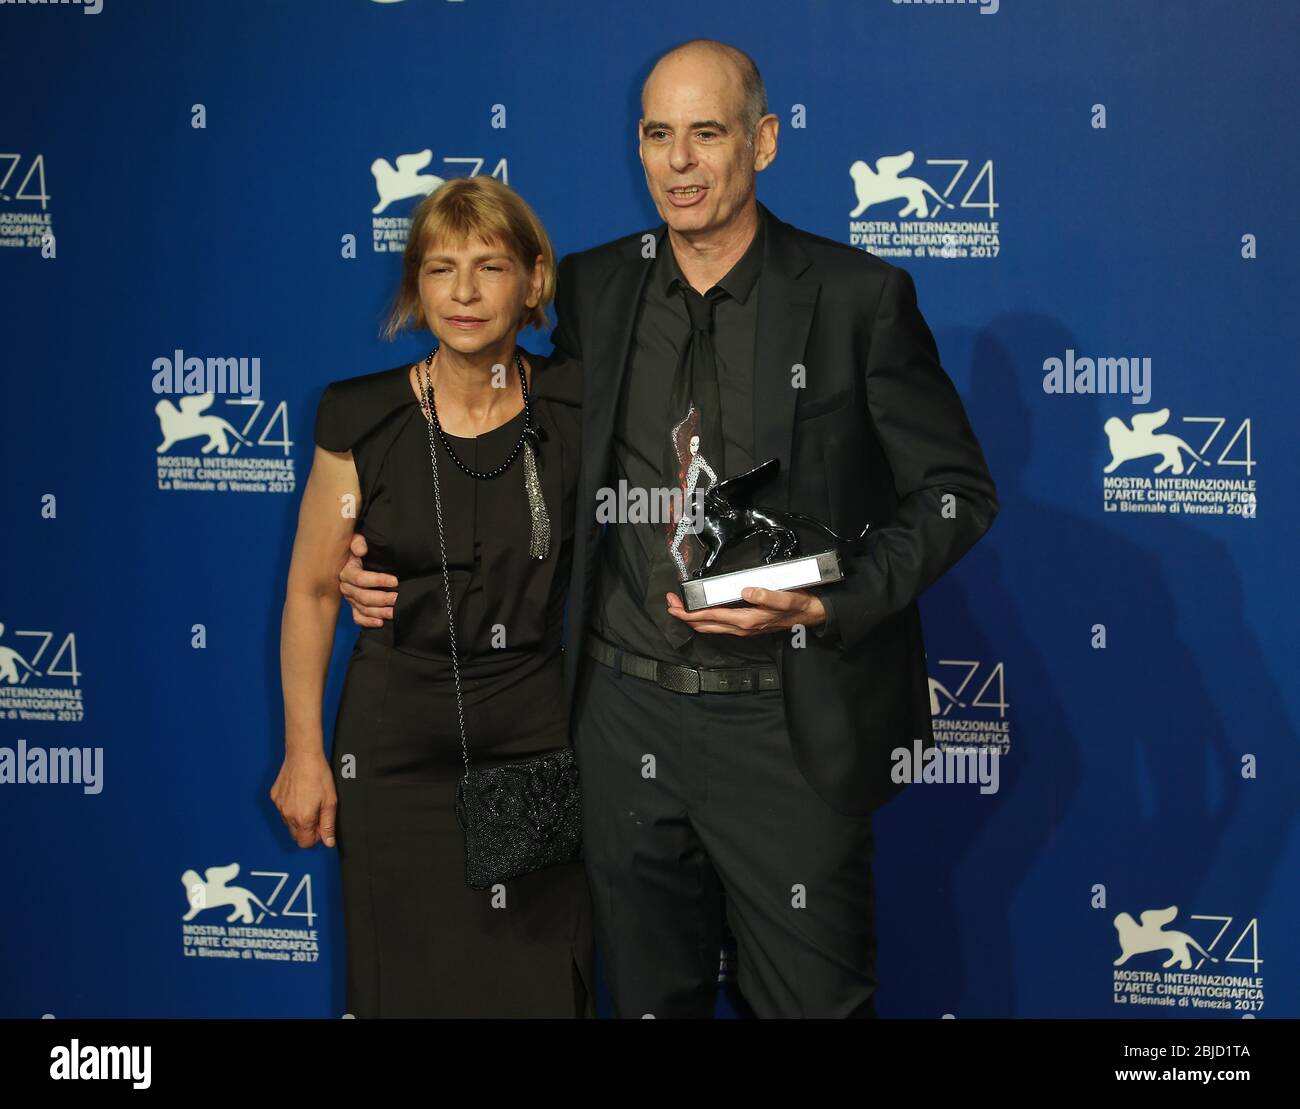 Venecia, Italia. 09 de septiembre de 2017. Laura Maoz y Samuel Maoz posan con el León de Plata - Premio del Gran Jurado por 'Foxtrot' Foto de stock